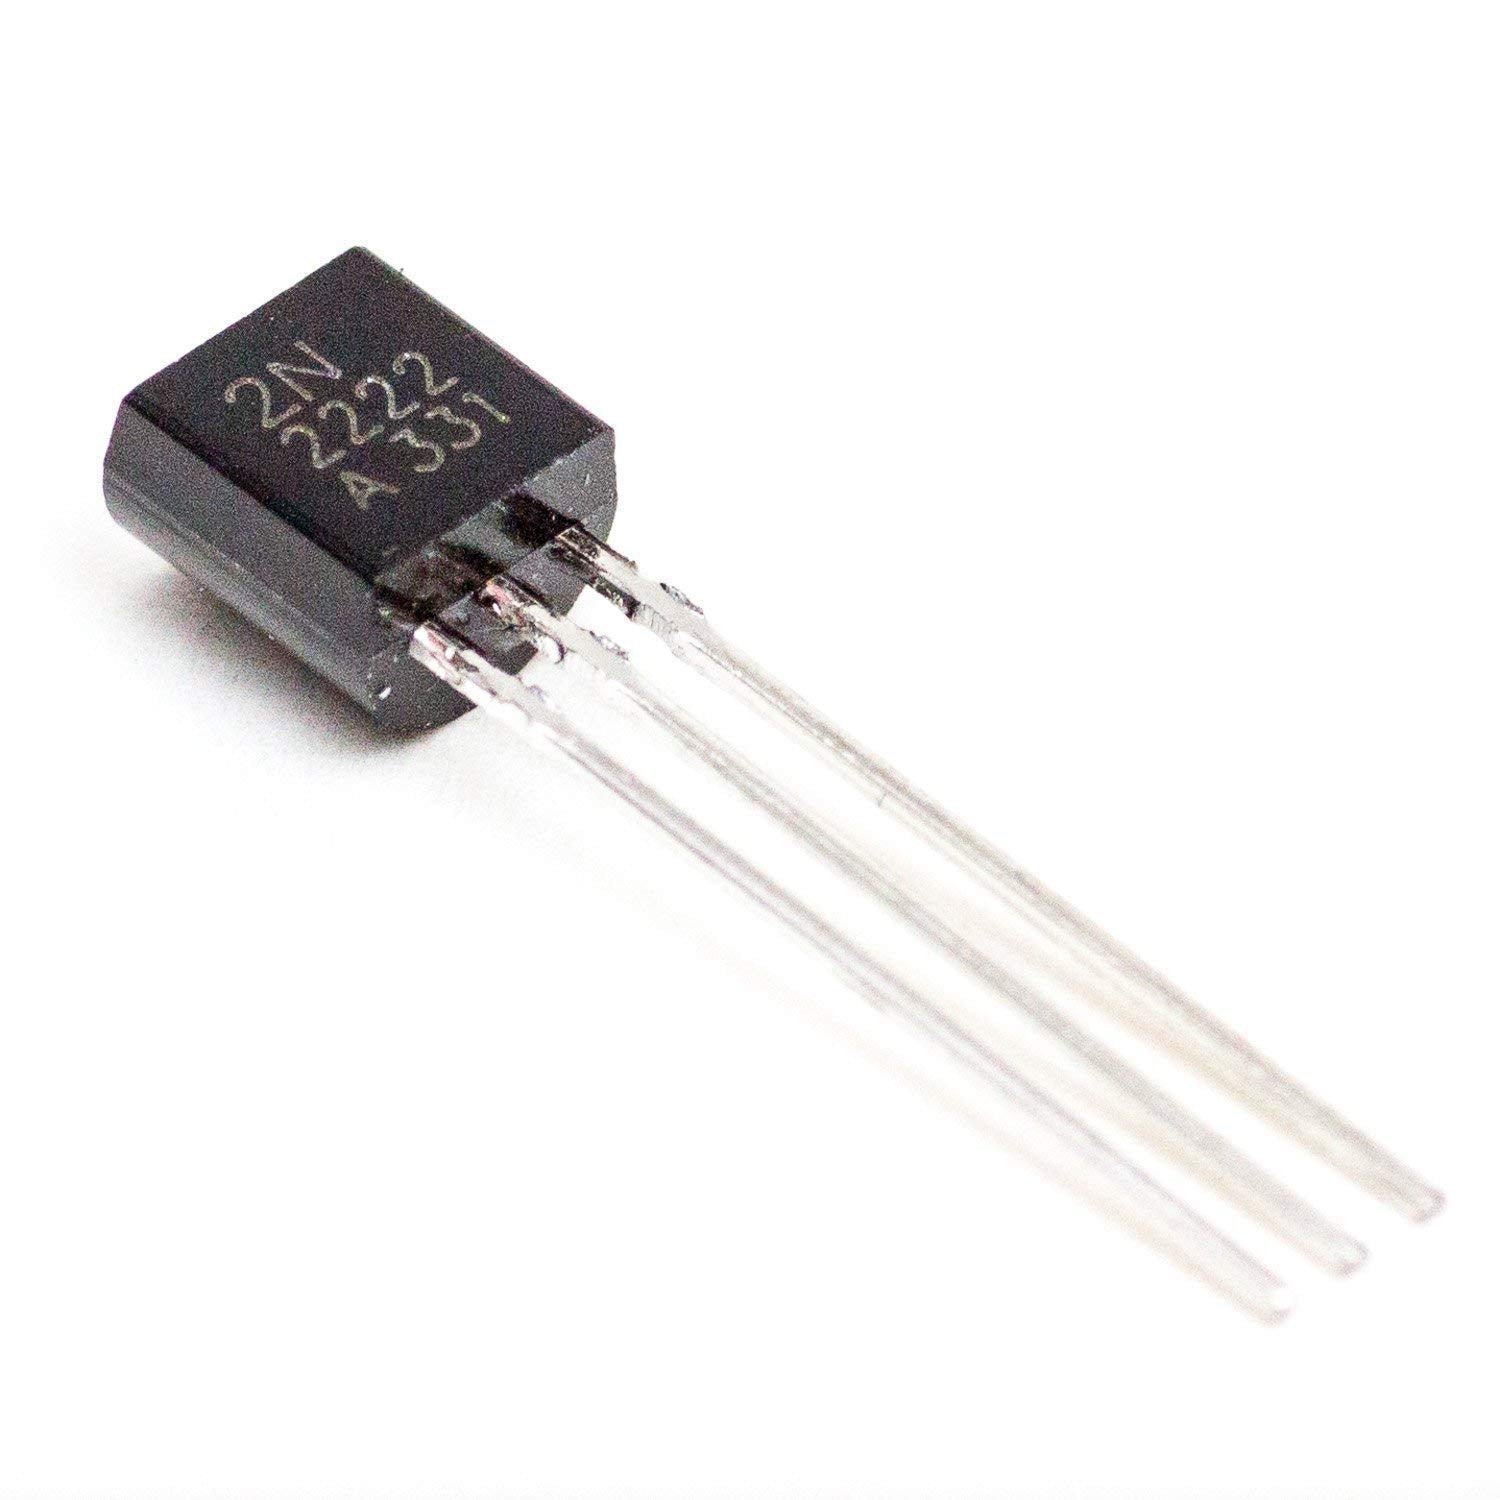 2N2222 A - General Purpose Transistor - NPN